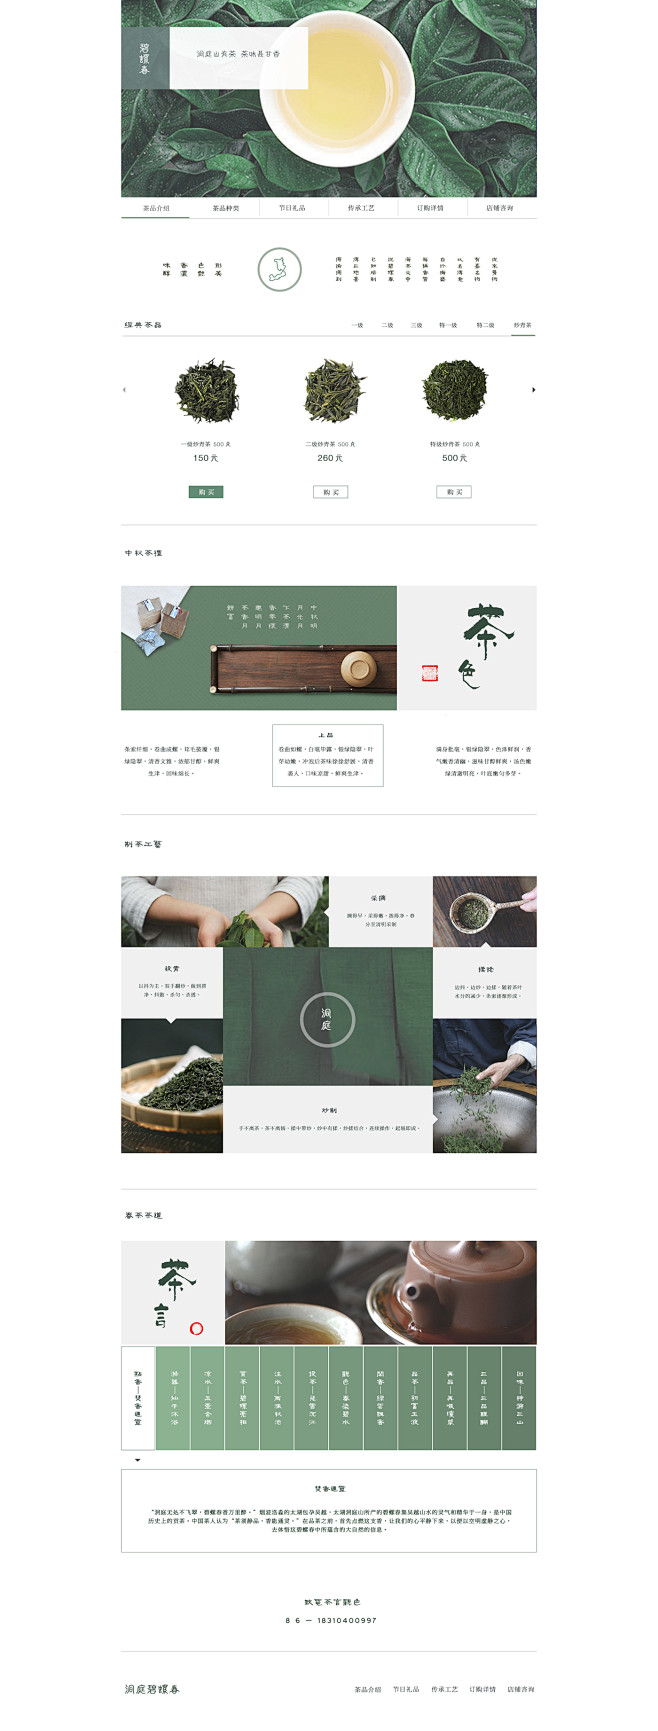 茶-web : 茶文化电商网站专题页设计